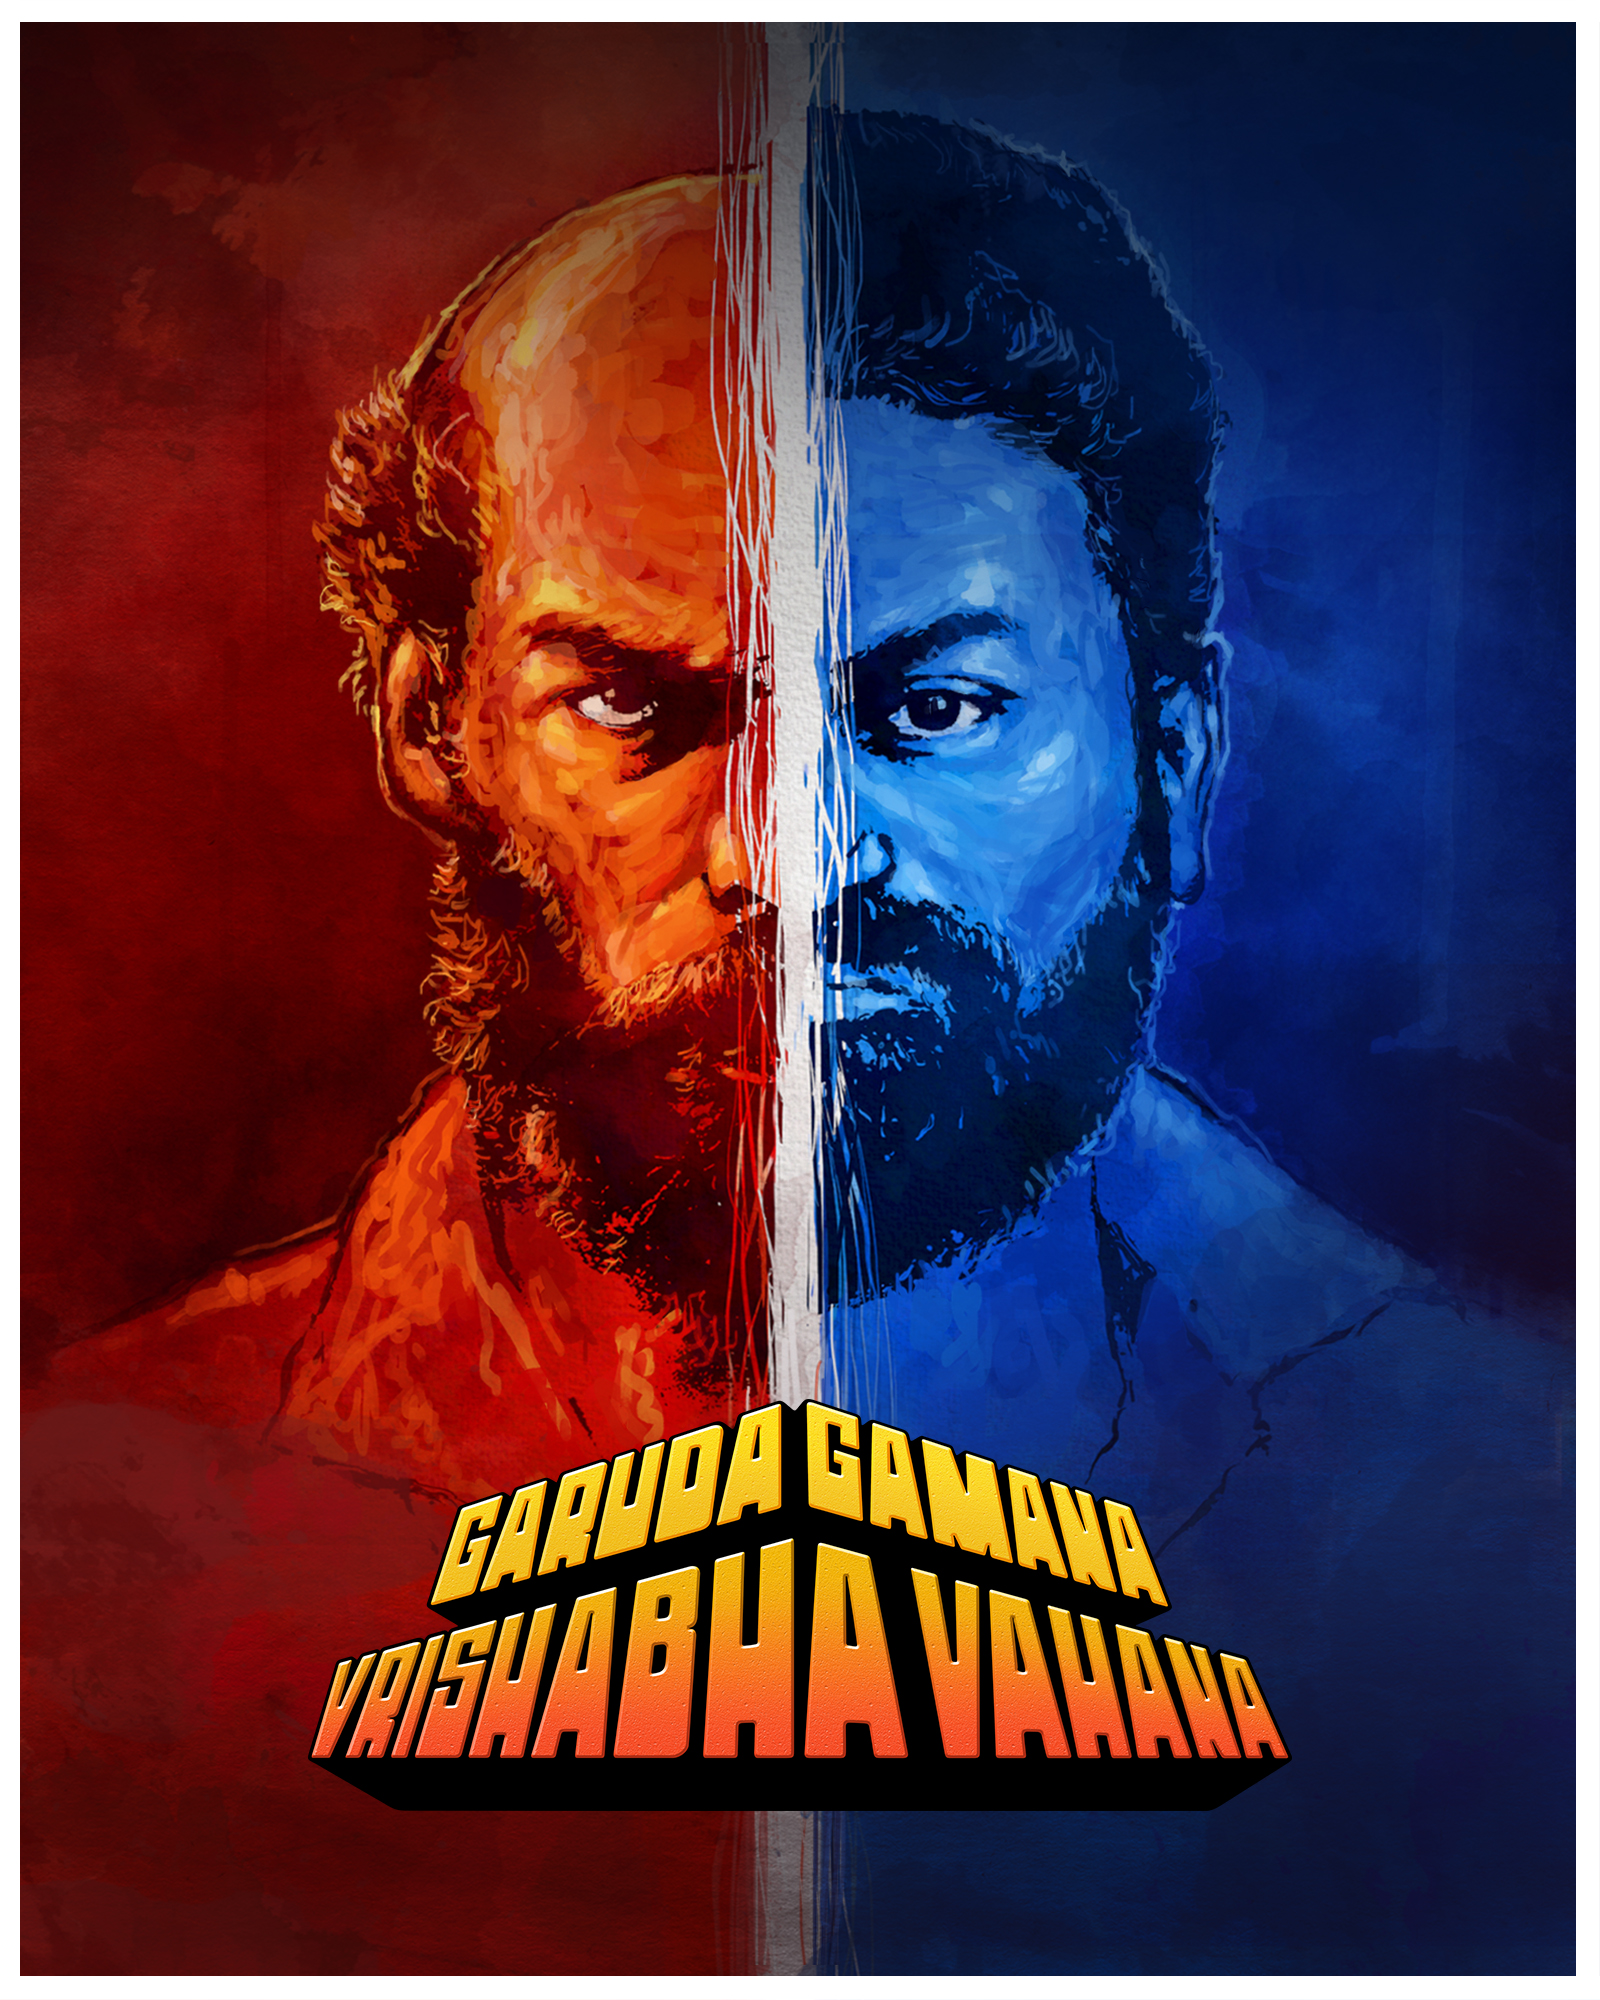 Garuda Gamana Vrishabha Vahana 2021 Kannada Full Movie 1080p 720p 480p HDRip ESub